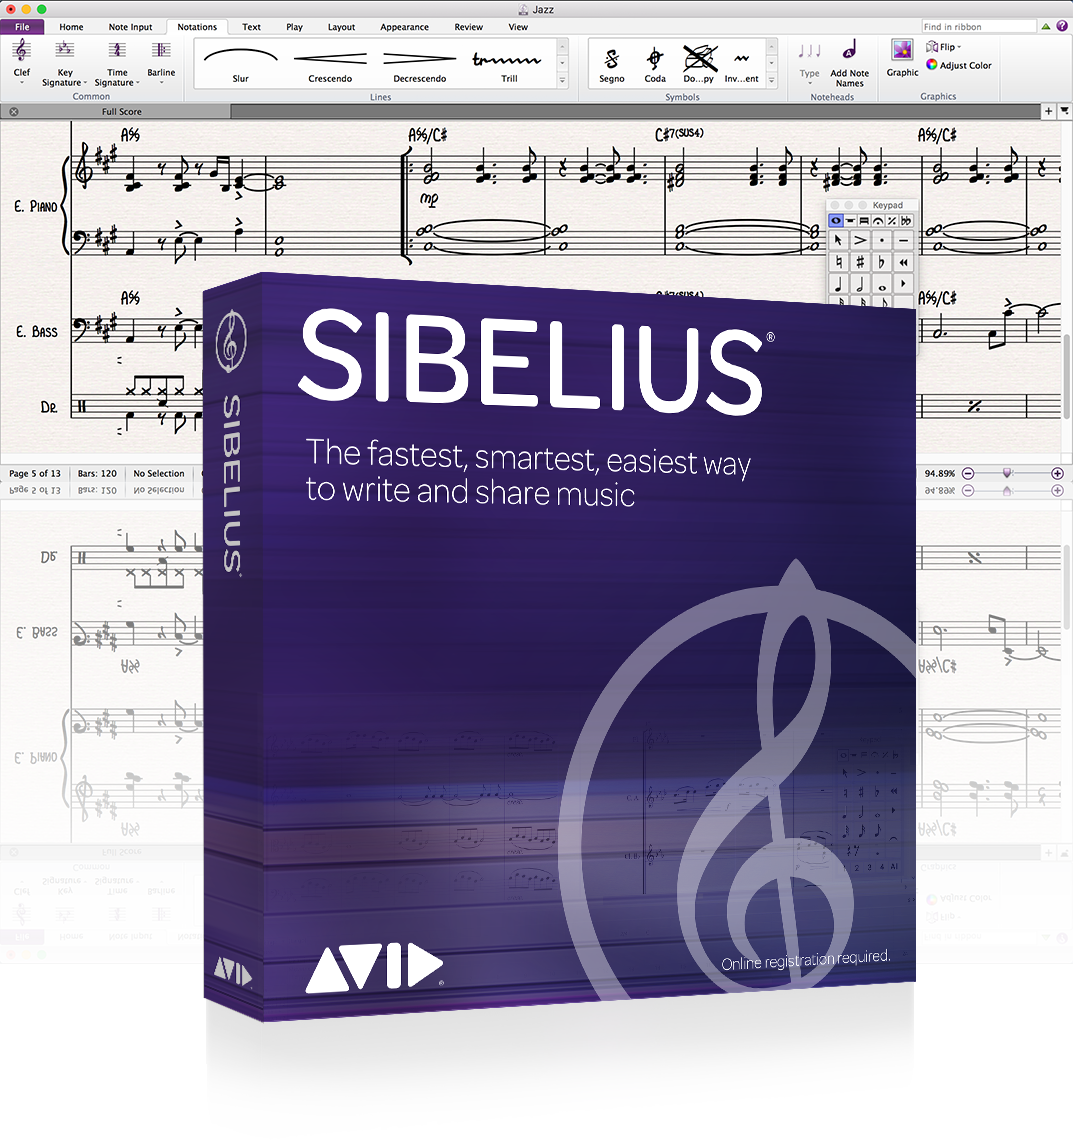 Avid Sibelius Perpetual License NEW